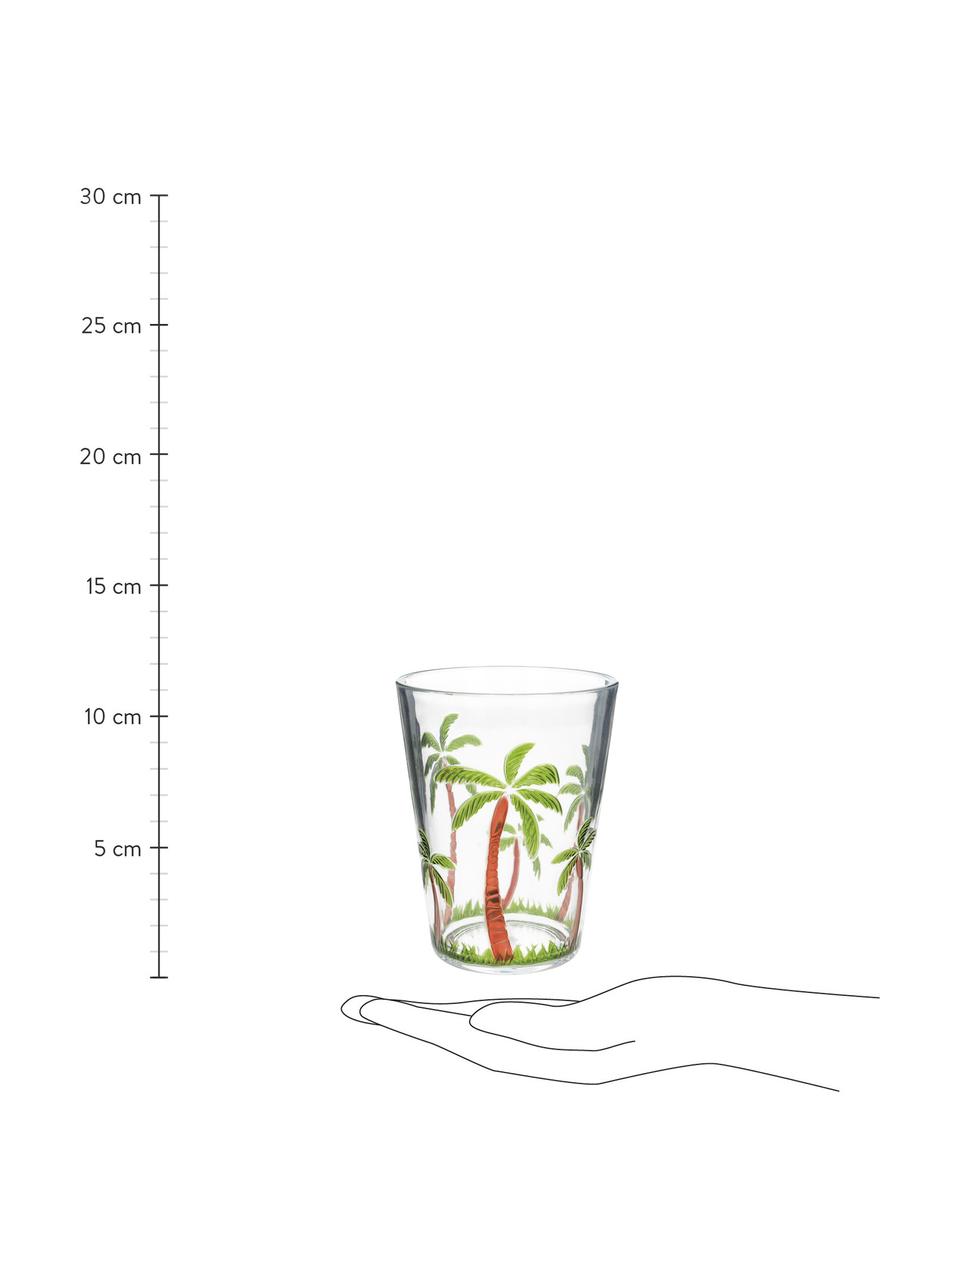 Akrylový pohár na vodu s palmami Gabrielle, Priehľadná, zelená, hnedá